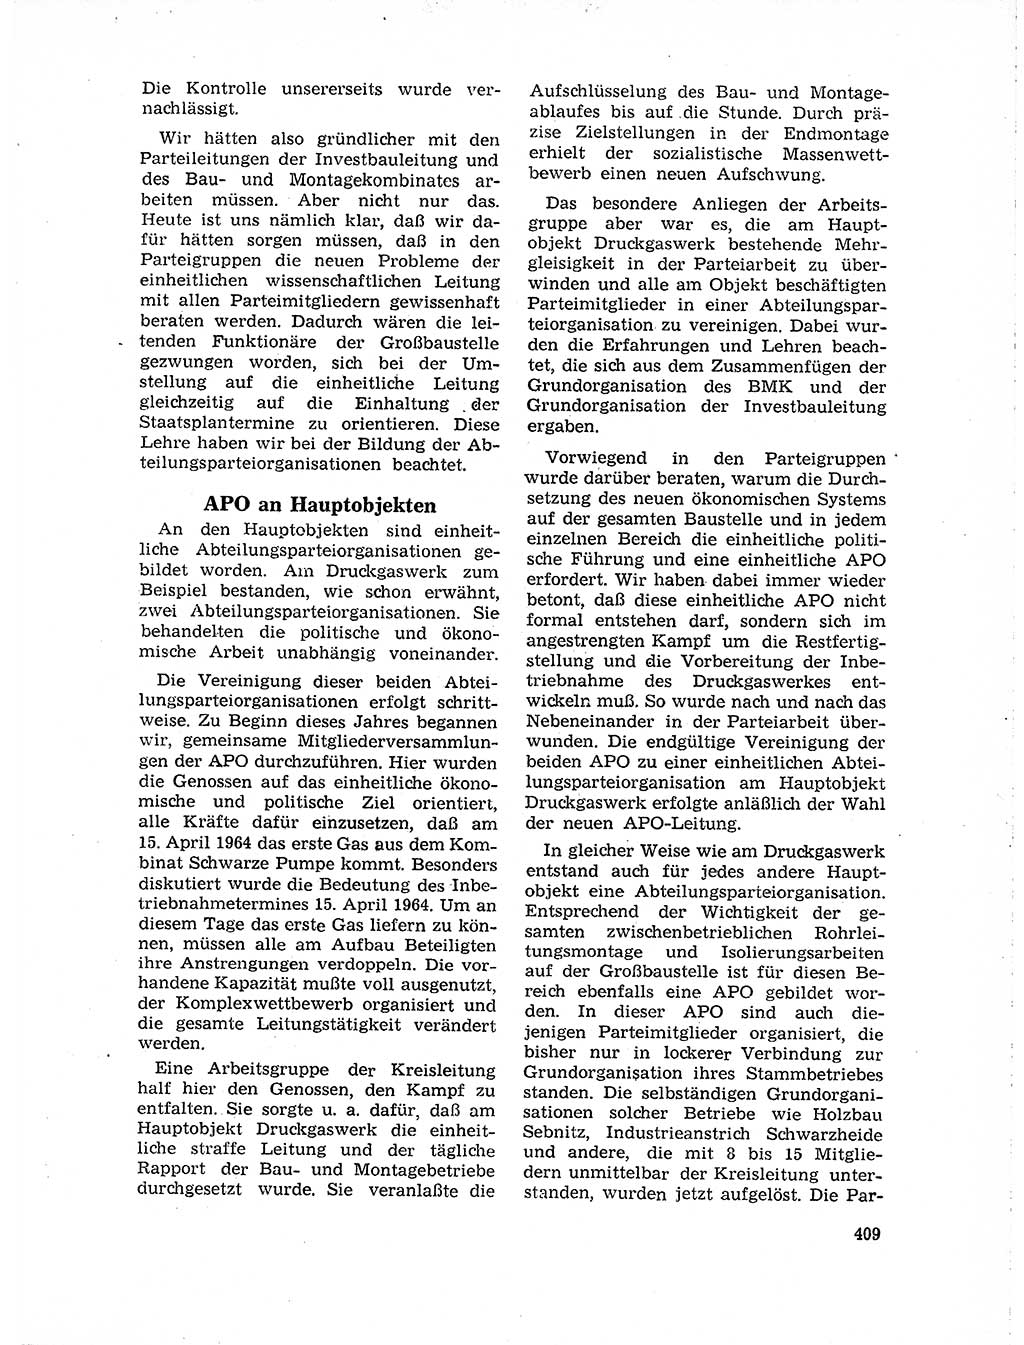 Neuer Weg (NW), Organ des Zentralkomitees (ZK) der SED (Sozialistische Einheitspartei Deutschlands) für Fragen des Parteilebens, 19. Jahrgang [Deutsche Demokratische Republik (DDR)] 1964, Seite 409 (NW ZK SED DDR 1964, S. 409)